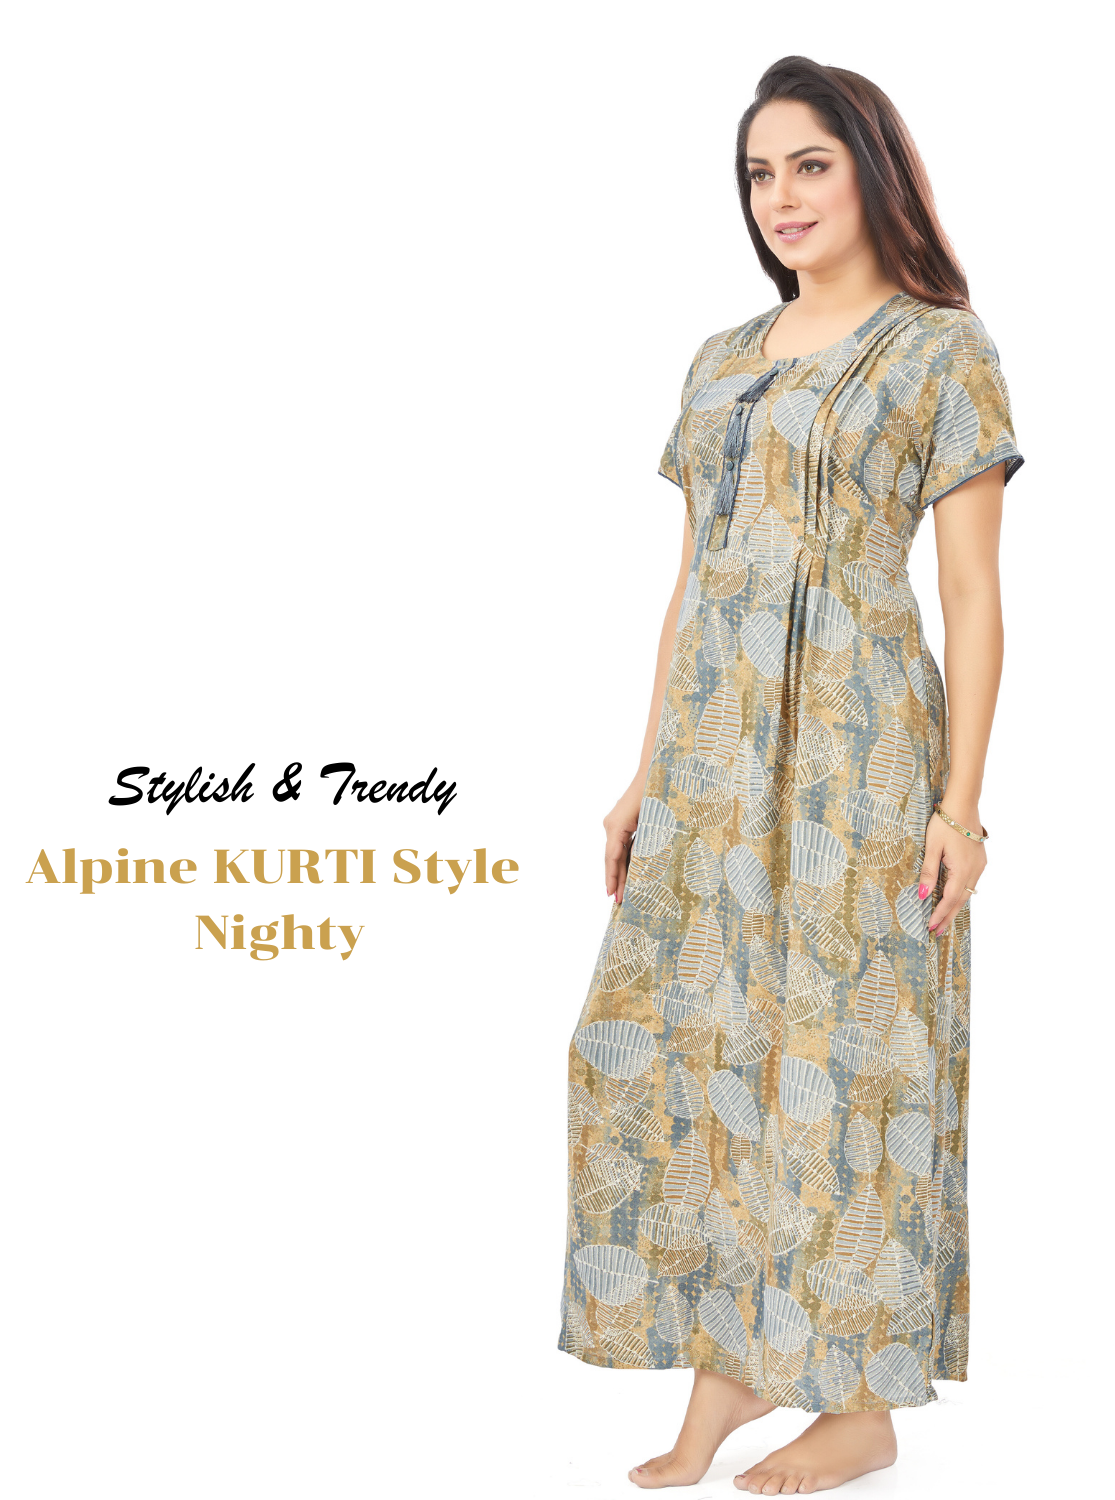 MANGAI New Premium Alpine KURTI Style | Beautiful Stylish KURTI Model | Side Pocket | Perfect Nightwear Collection's for Trendy Women's